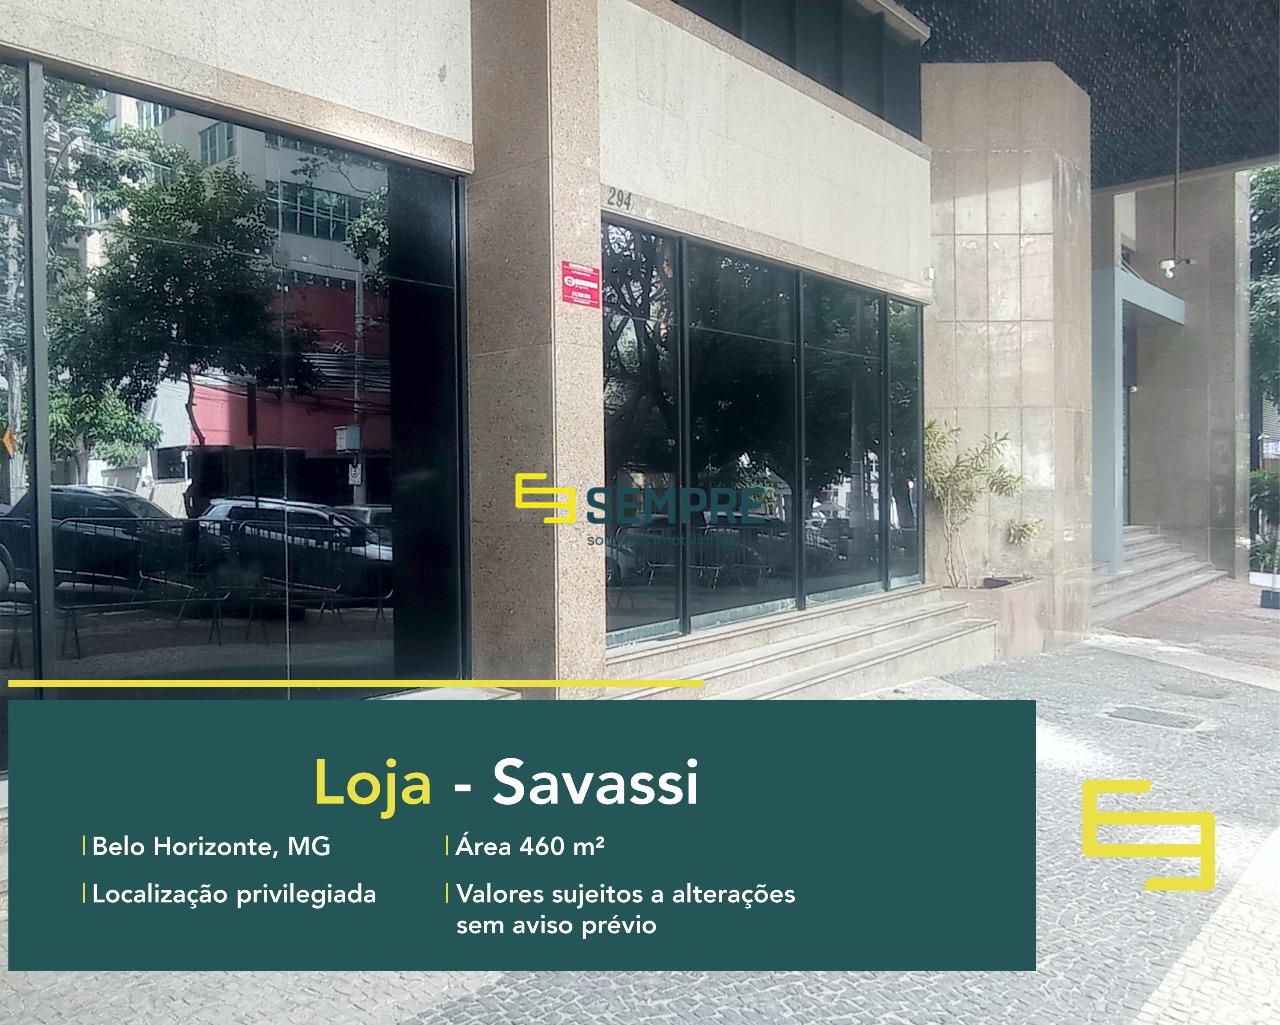 Aluguel de loja na Savassi em BH - Ed. Berlioz, em excelente localização. O estabelecimento comercial conta, sobretudo, com área de 460 m².